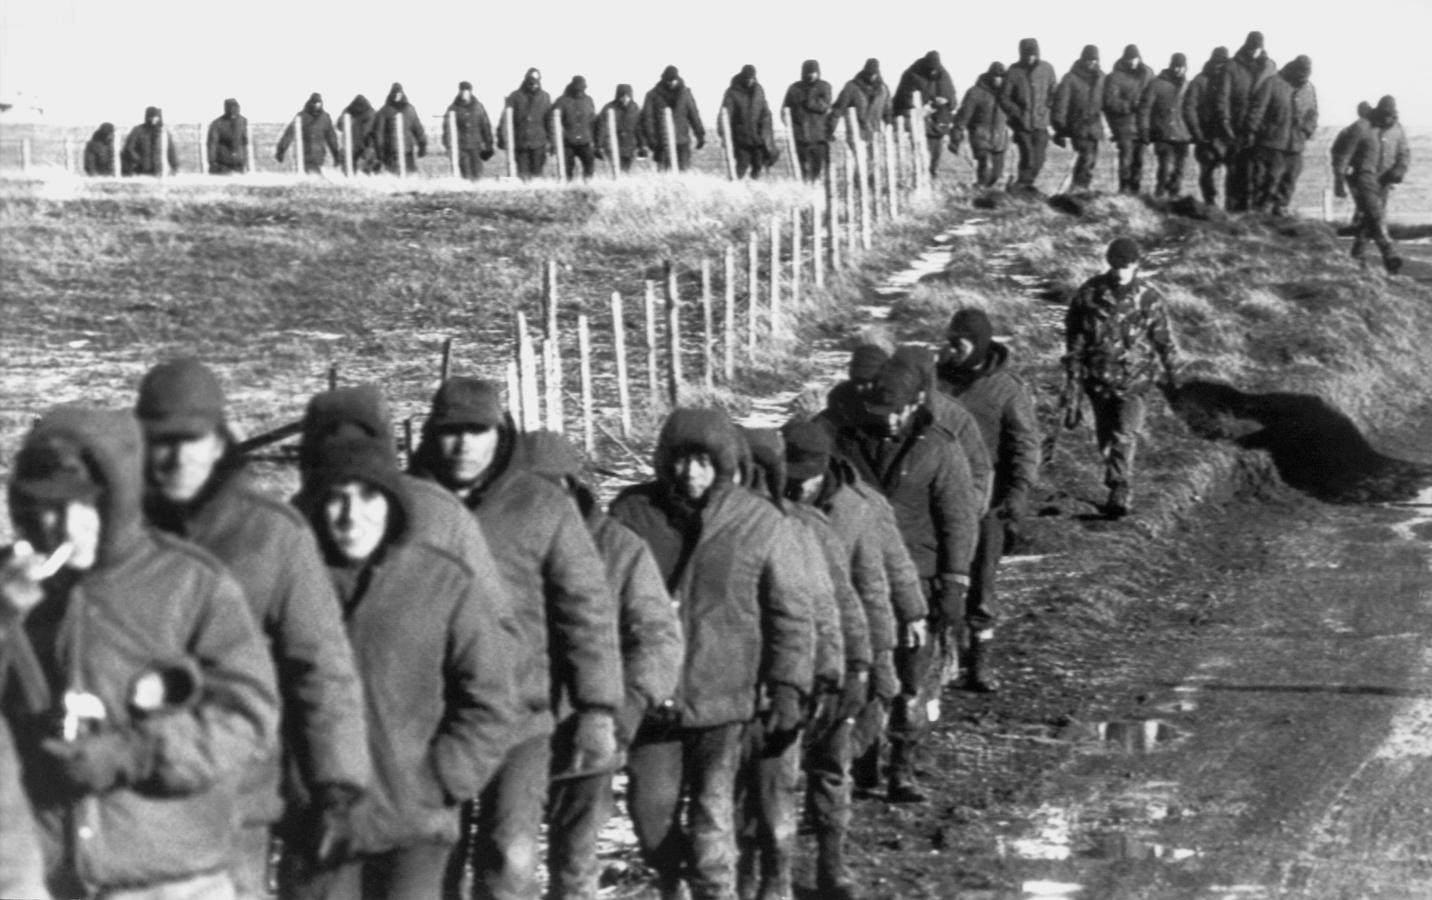 Los soldados argentinos (en primer plano) son escoltados por soldados británicos después de rendirse el 2 de junio de 1982 cerca de Goose Green, durante la Guerra de las Malvinas. 